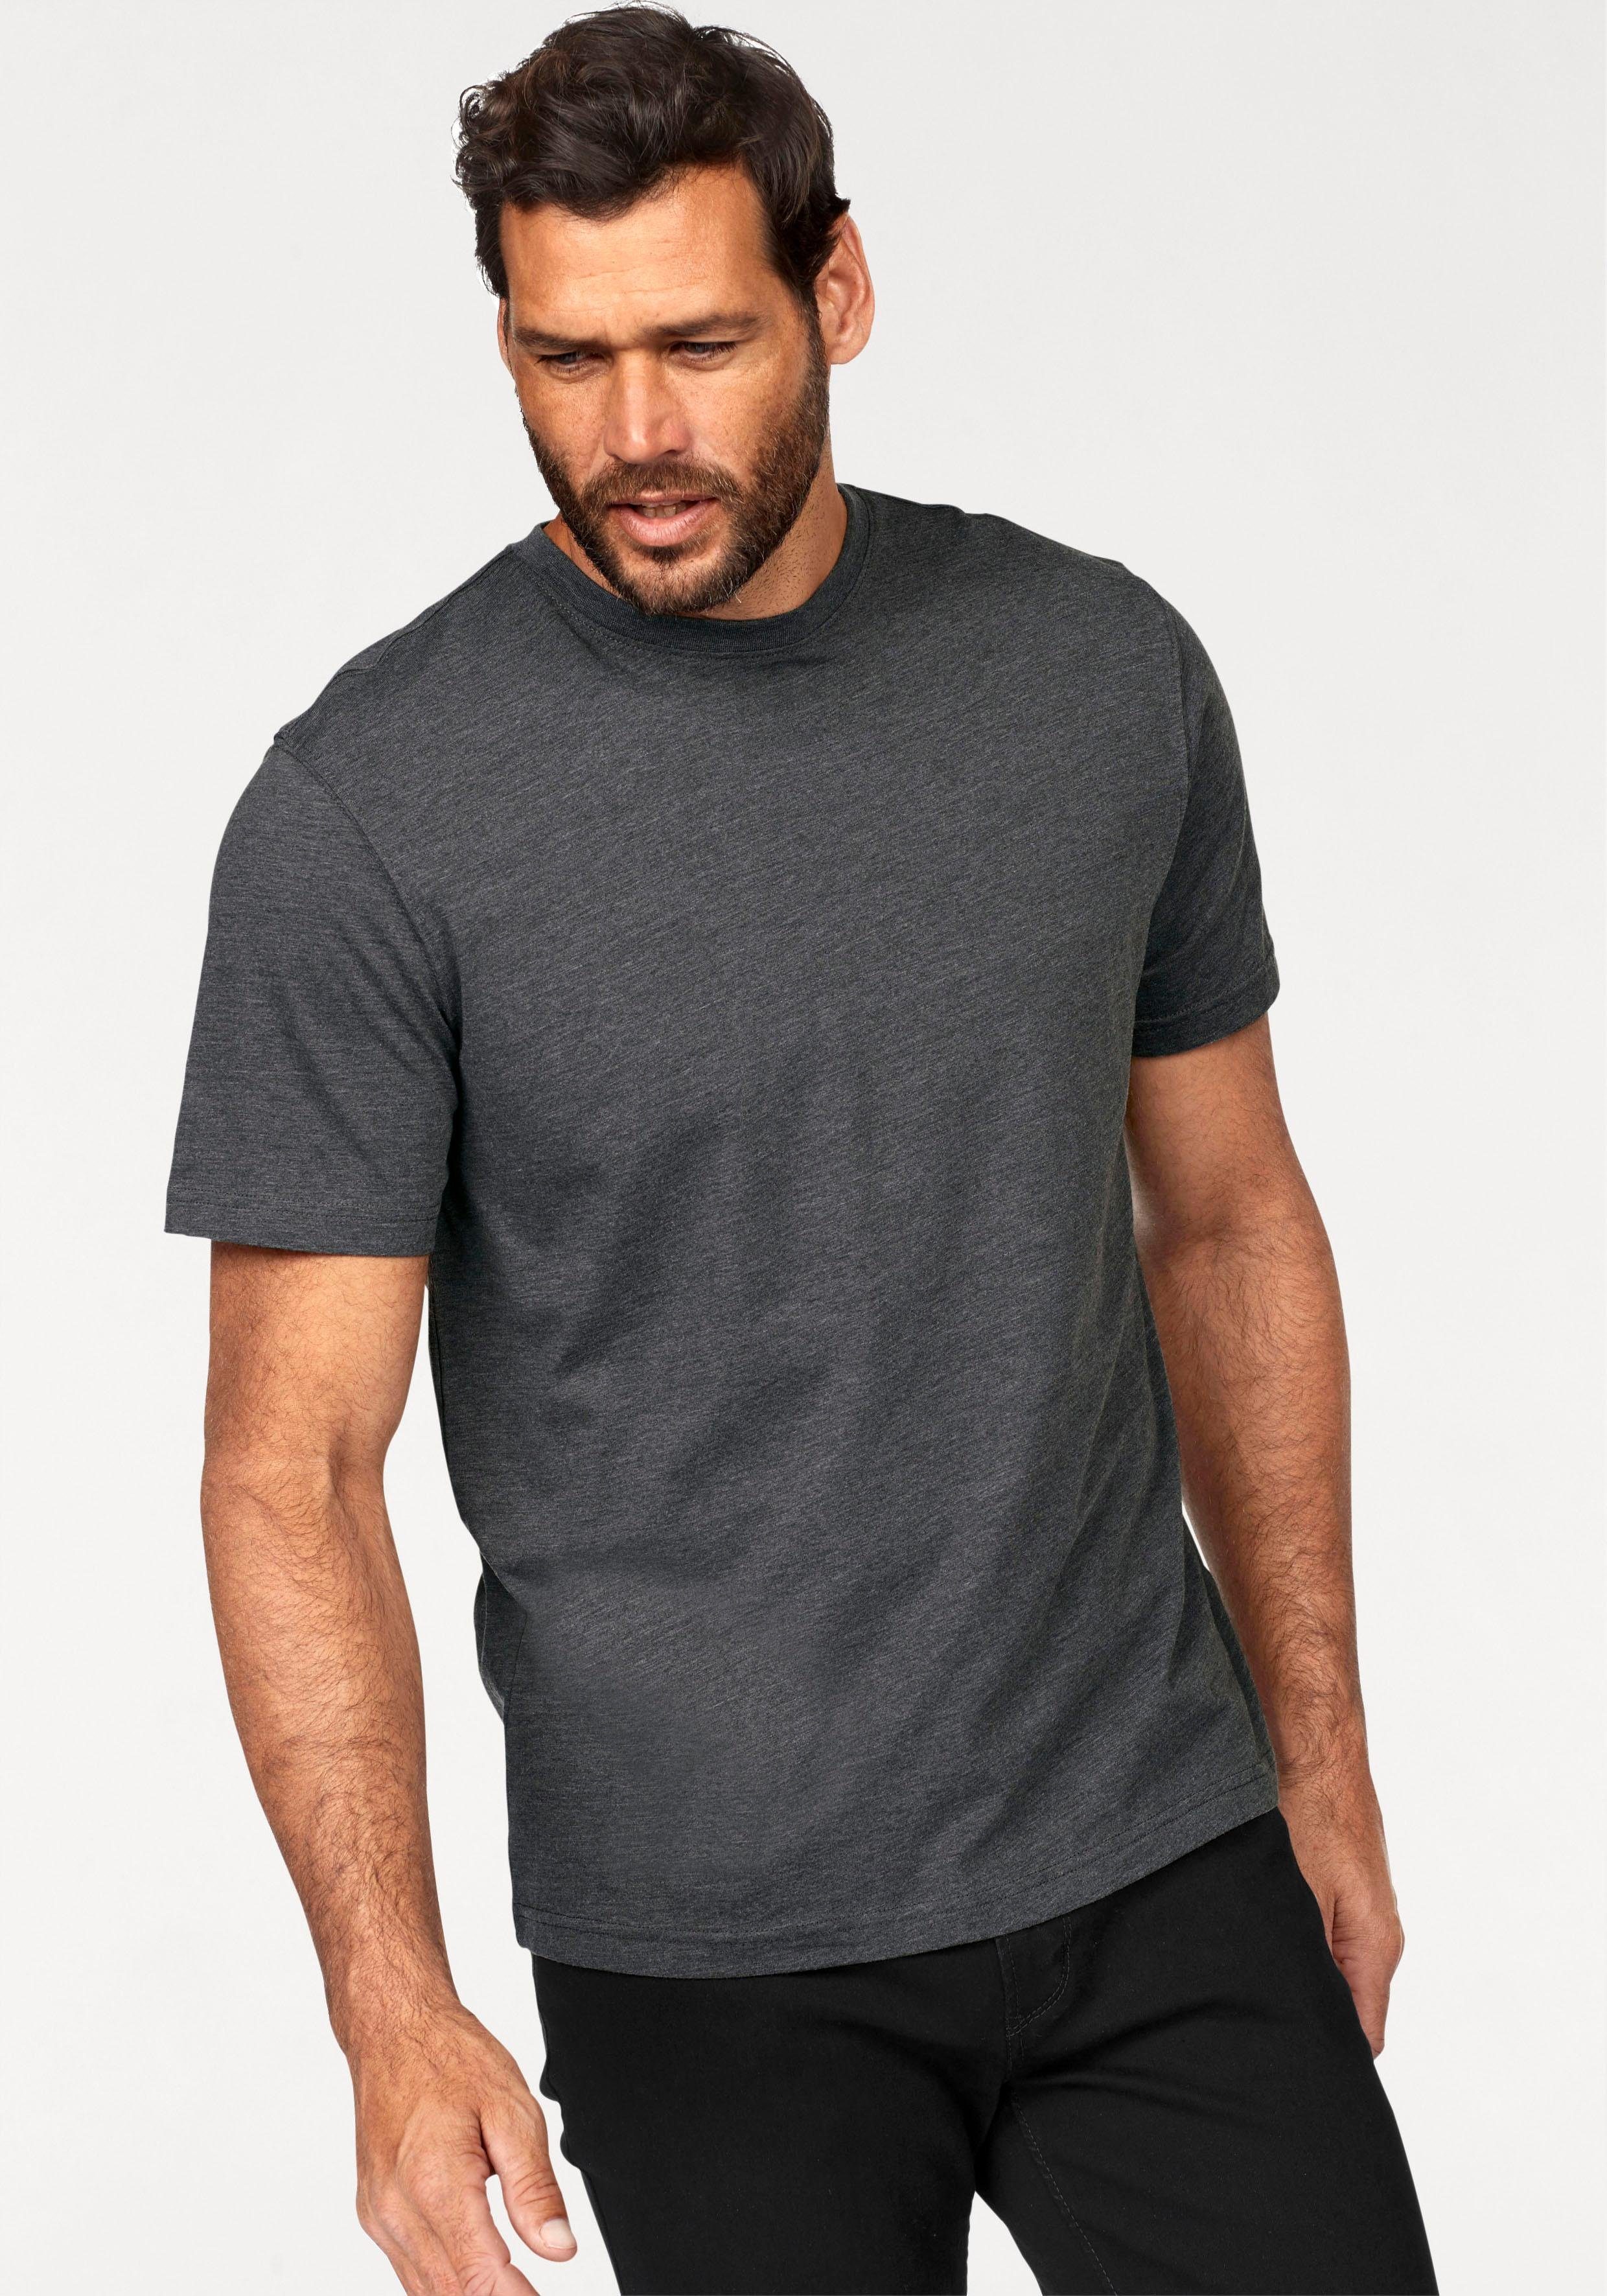 T-shirt auch Unterzieh 2-tlg., Man's 2er-Pack) T-Shirt World (Packung, perfekt als